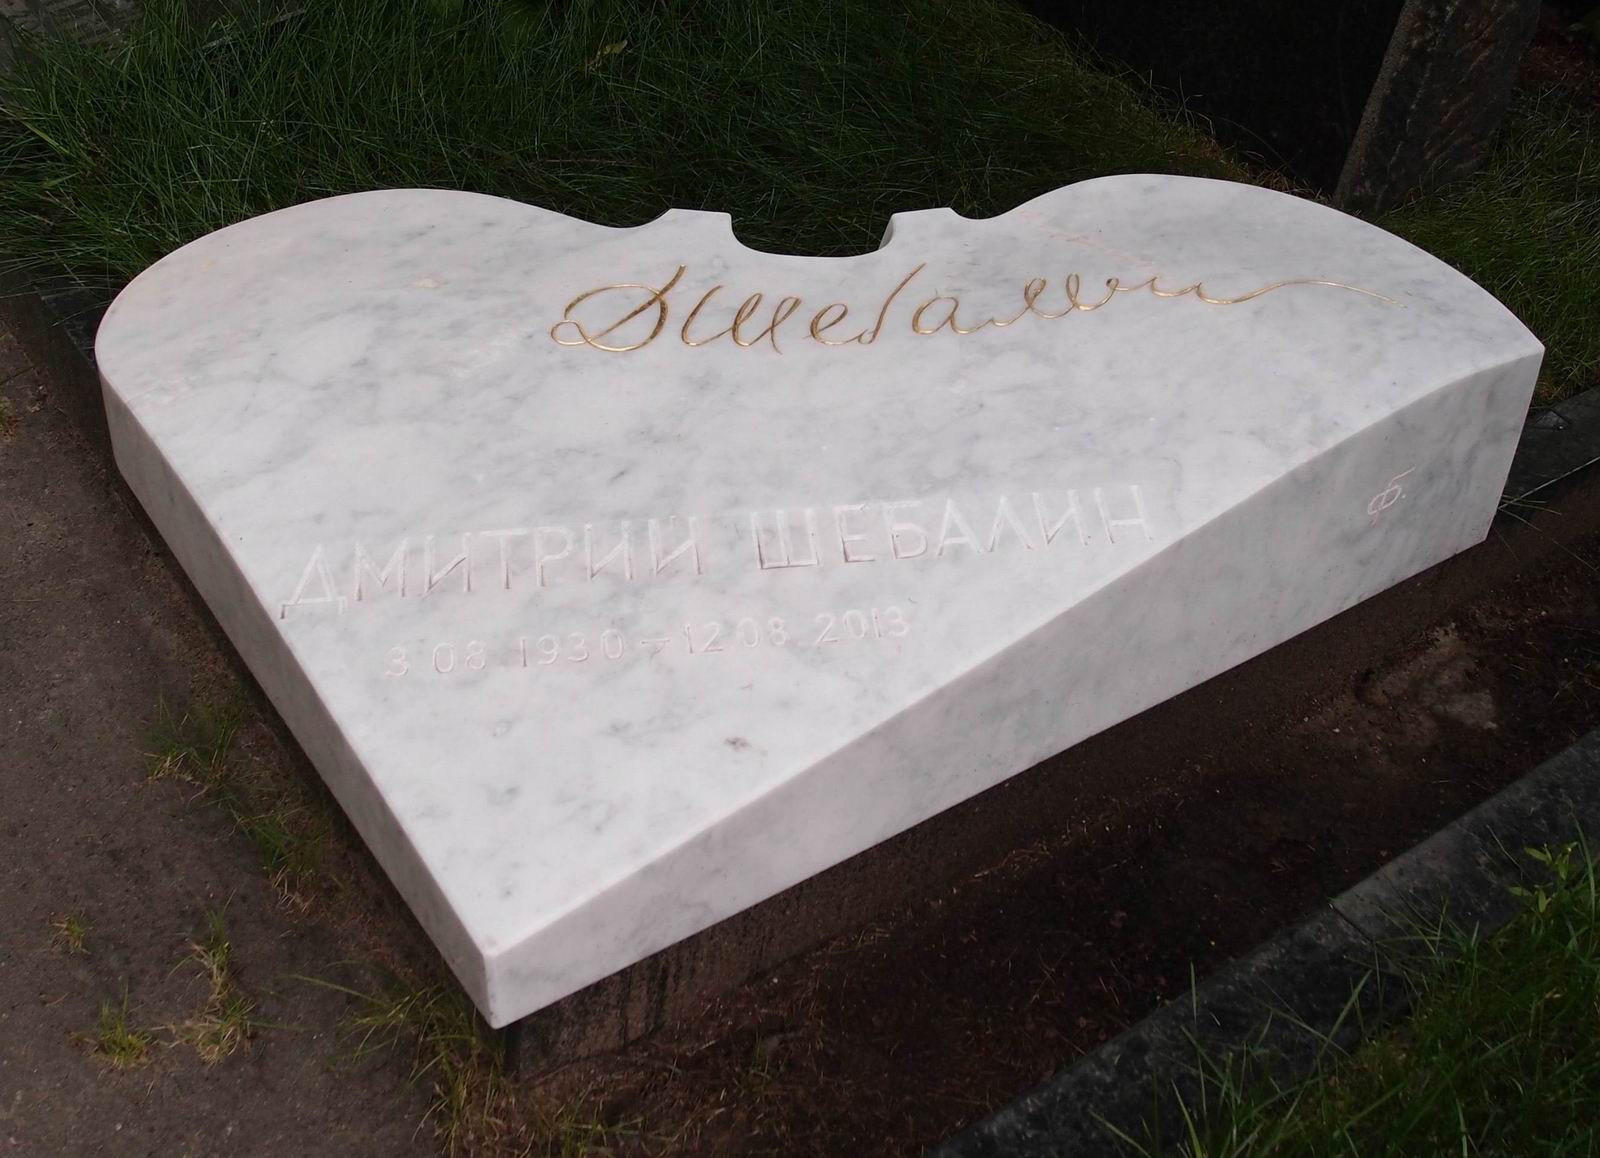 Памятник на могиле Шебалина Д.В. (1930-2013), ск. Г.Франгулян, на Новодевичьем кладбище (8-29-8).